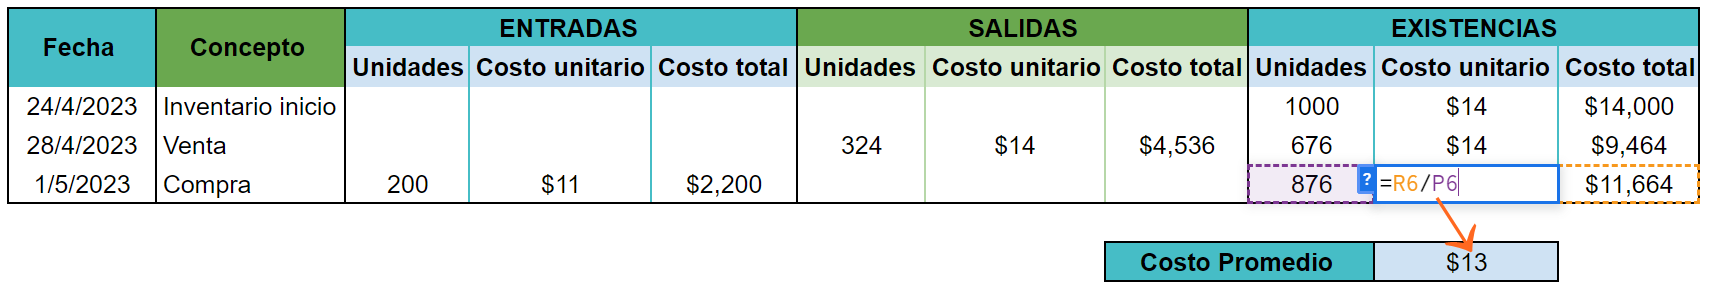 ejemplos de cálculo del costo promedio de las unidades existentes